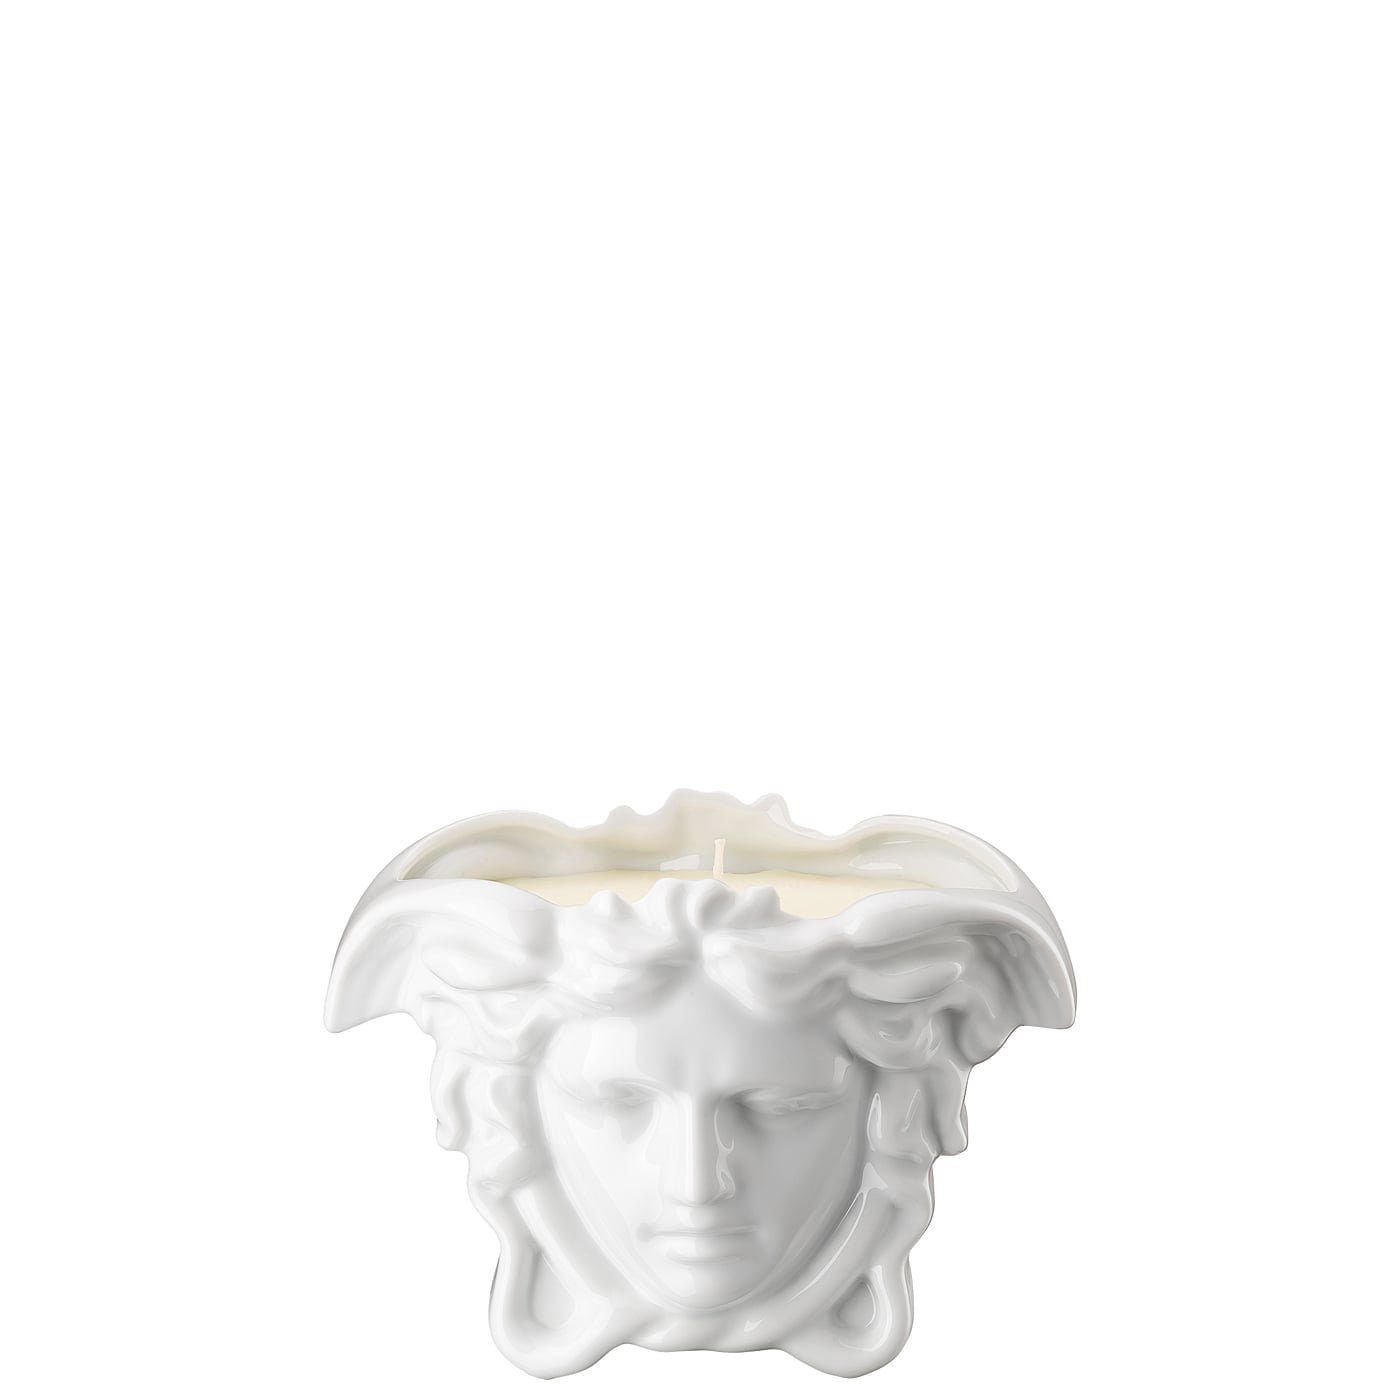 Duftwachs weiß meets Tischlicht Versace mit Grande Teelichthalter Rosenthal Medusa